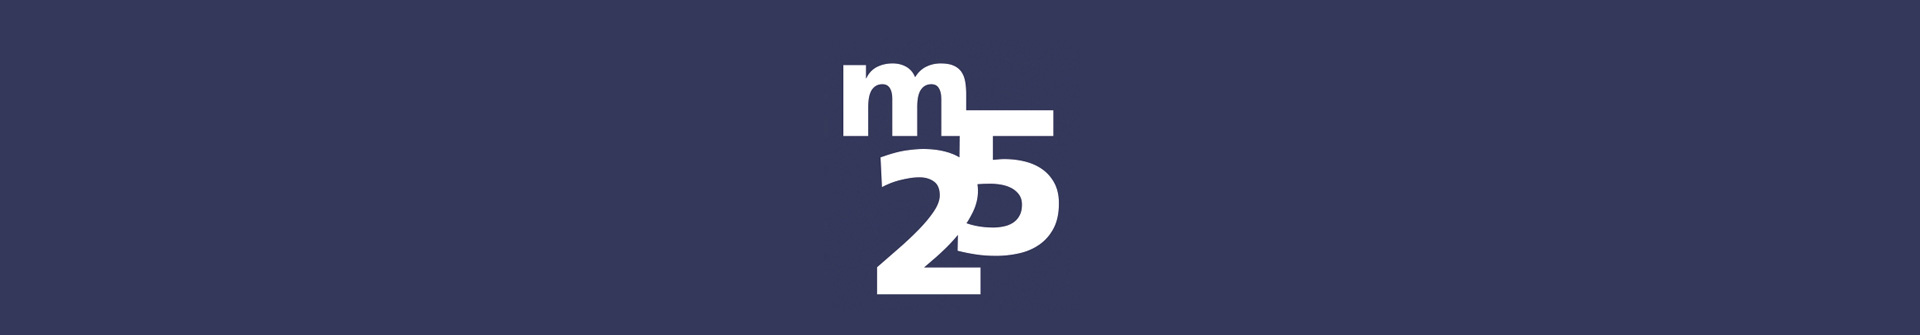 Logo bestehend aus dem Buchstaben "m" und der Zahl "25"